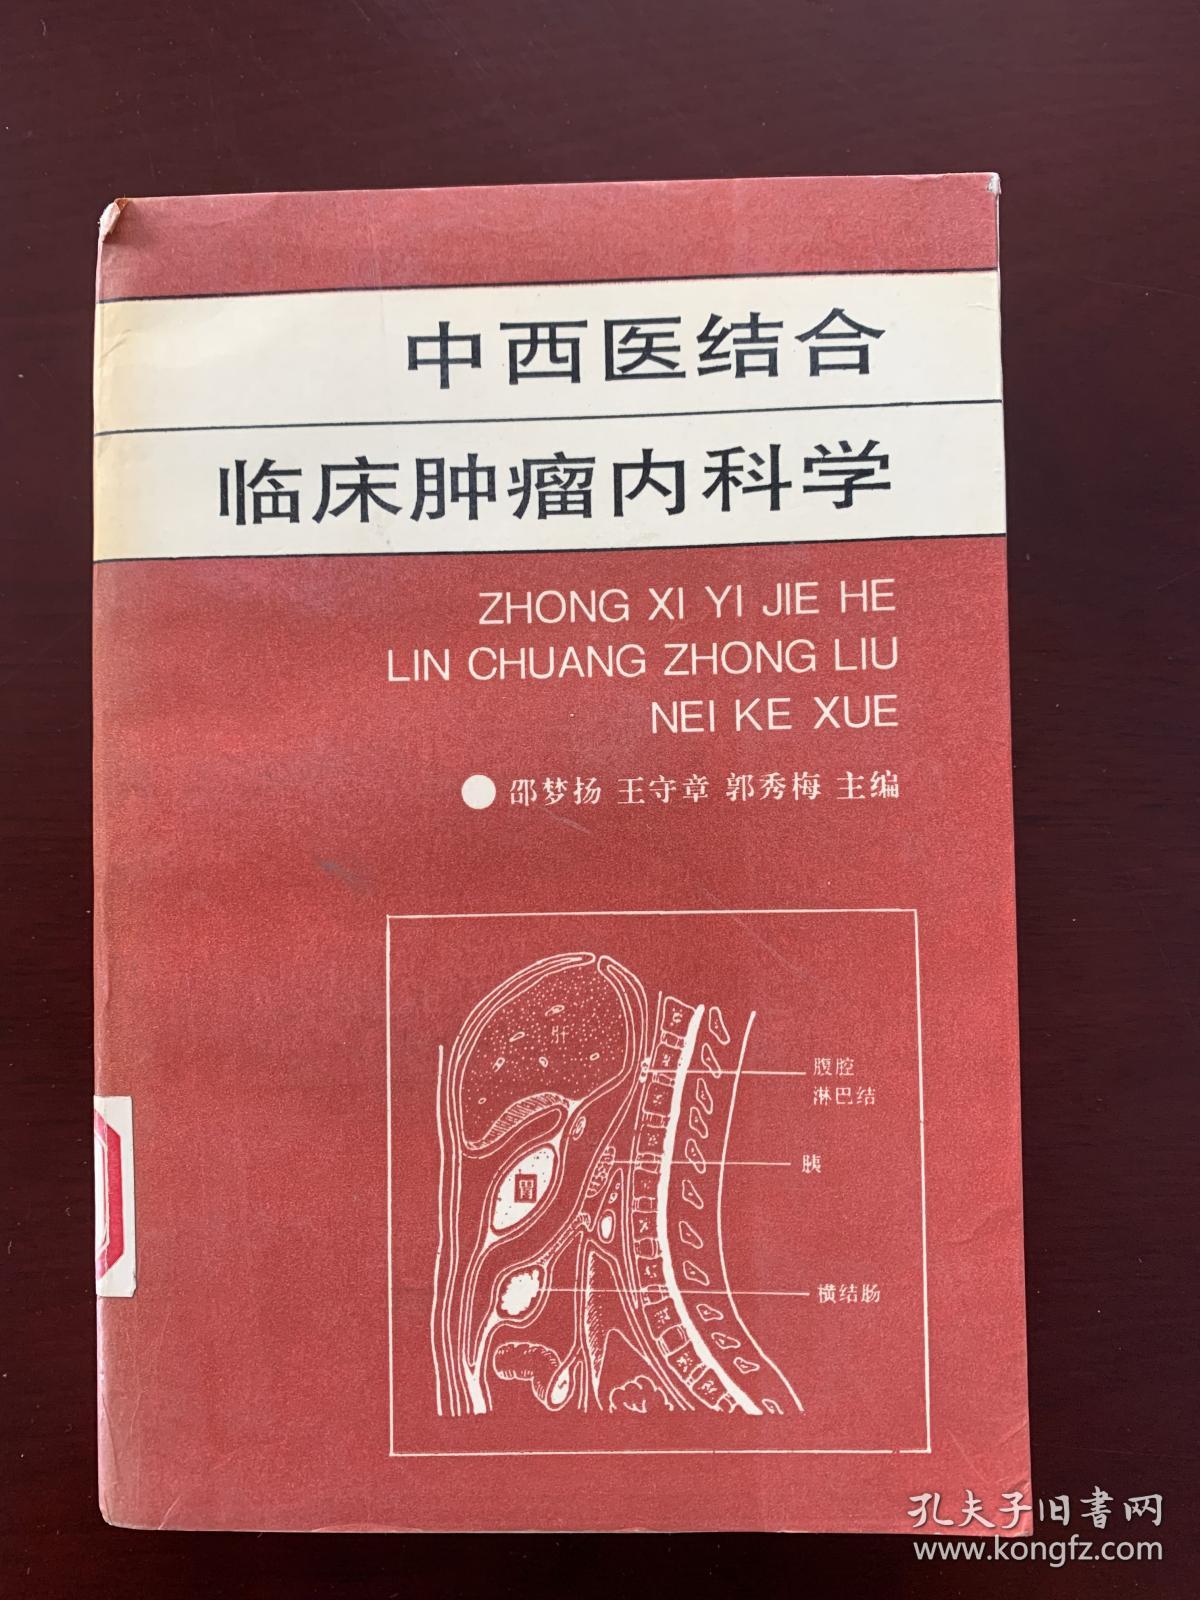 《中西医结合临床肿瘤内科学》，一版一印，第一步临床肿瘤内科学的中西医结合专著。